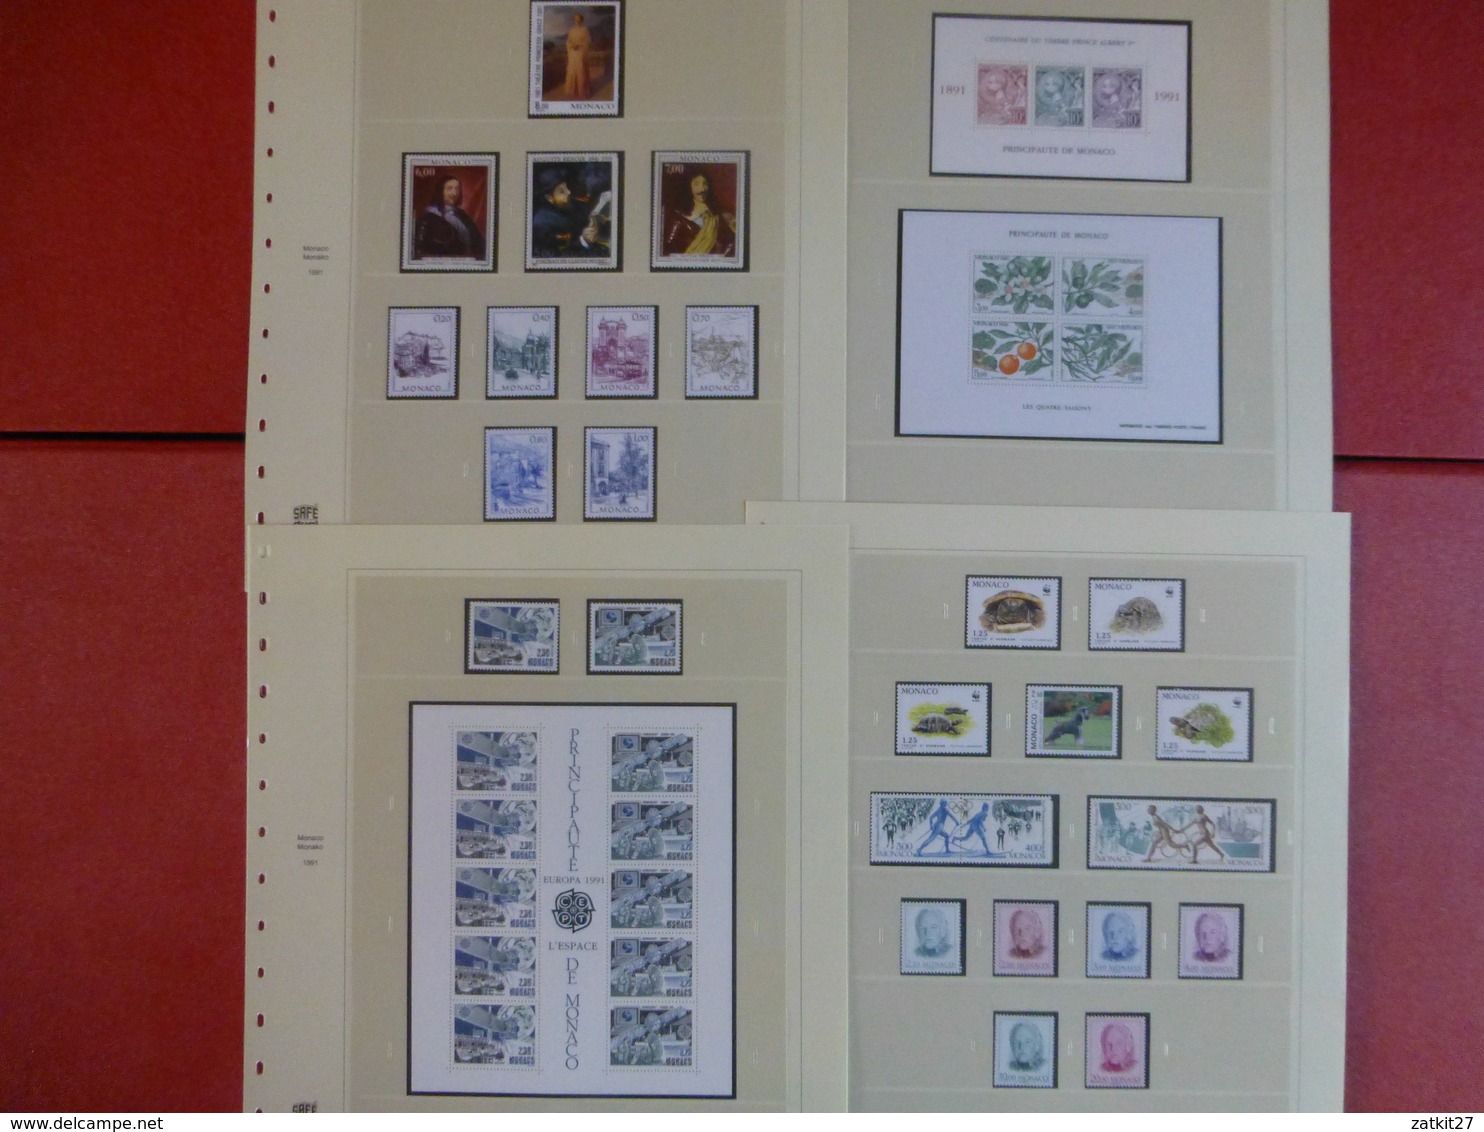 collection timbres neufs **  de Monaco